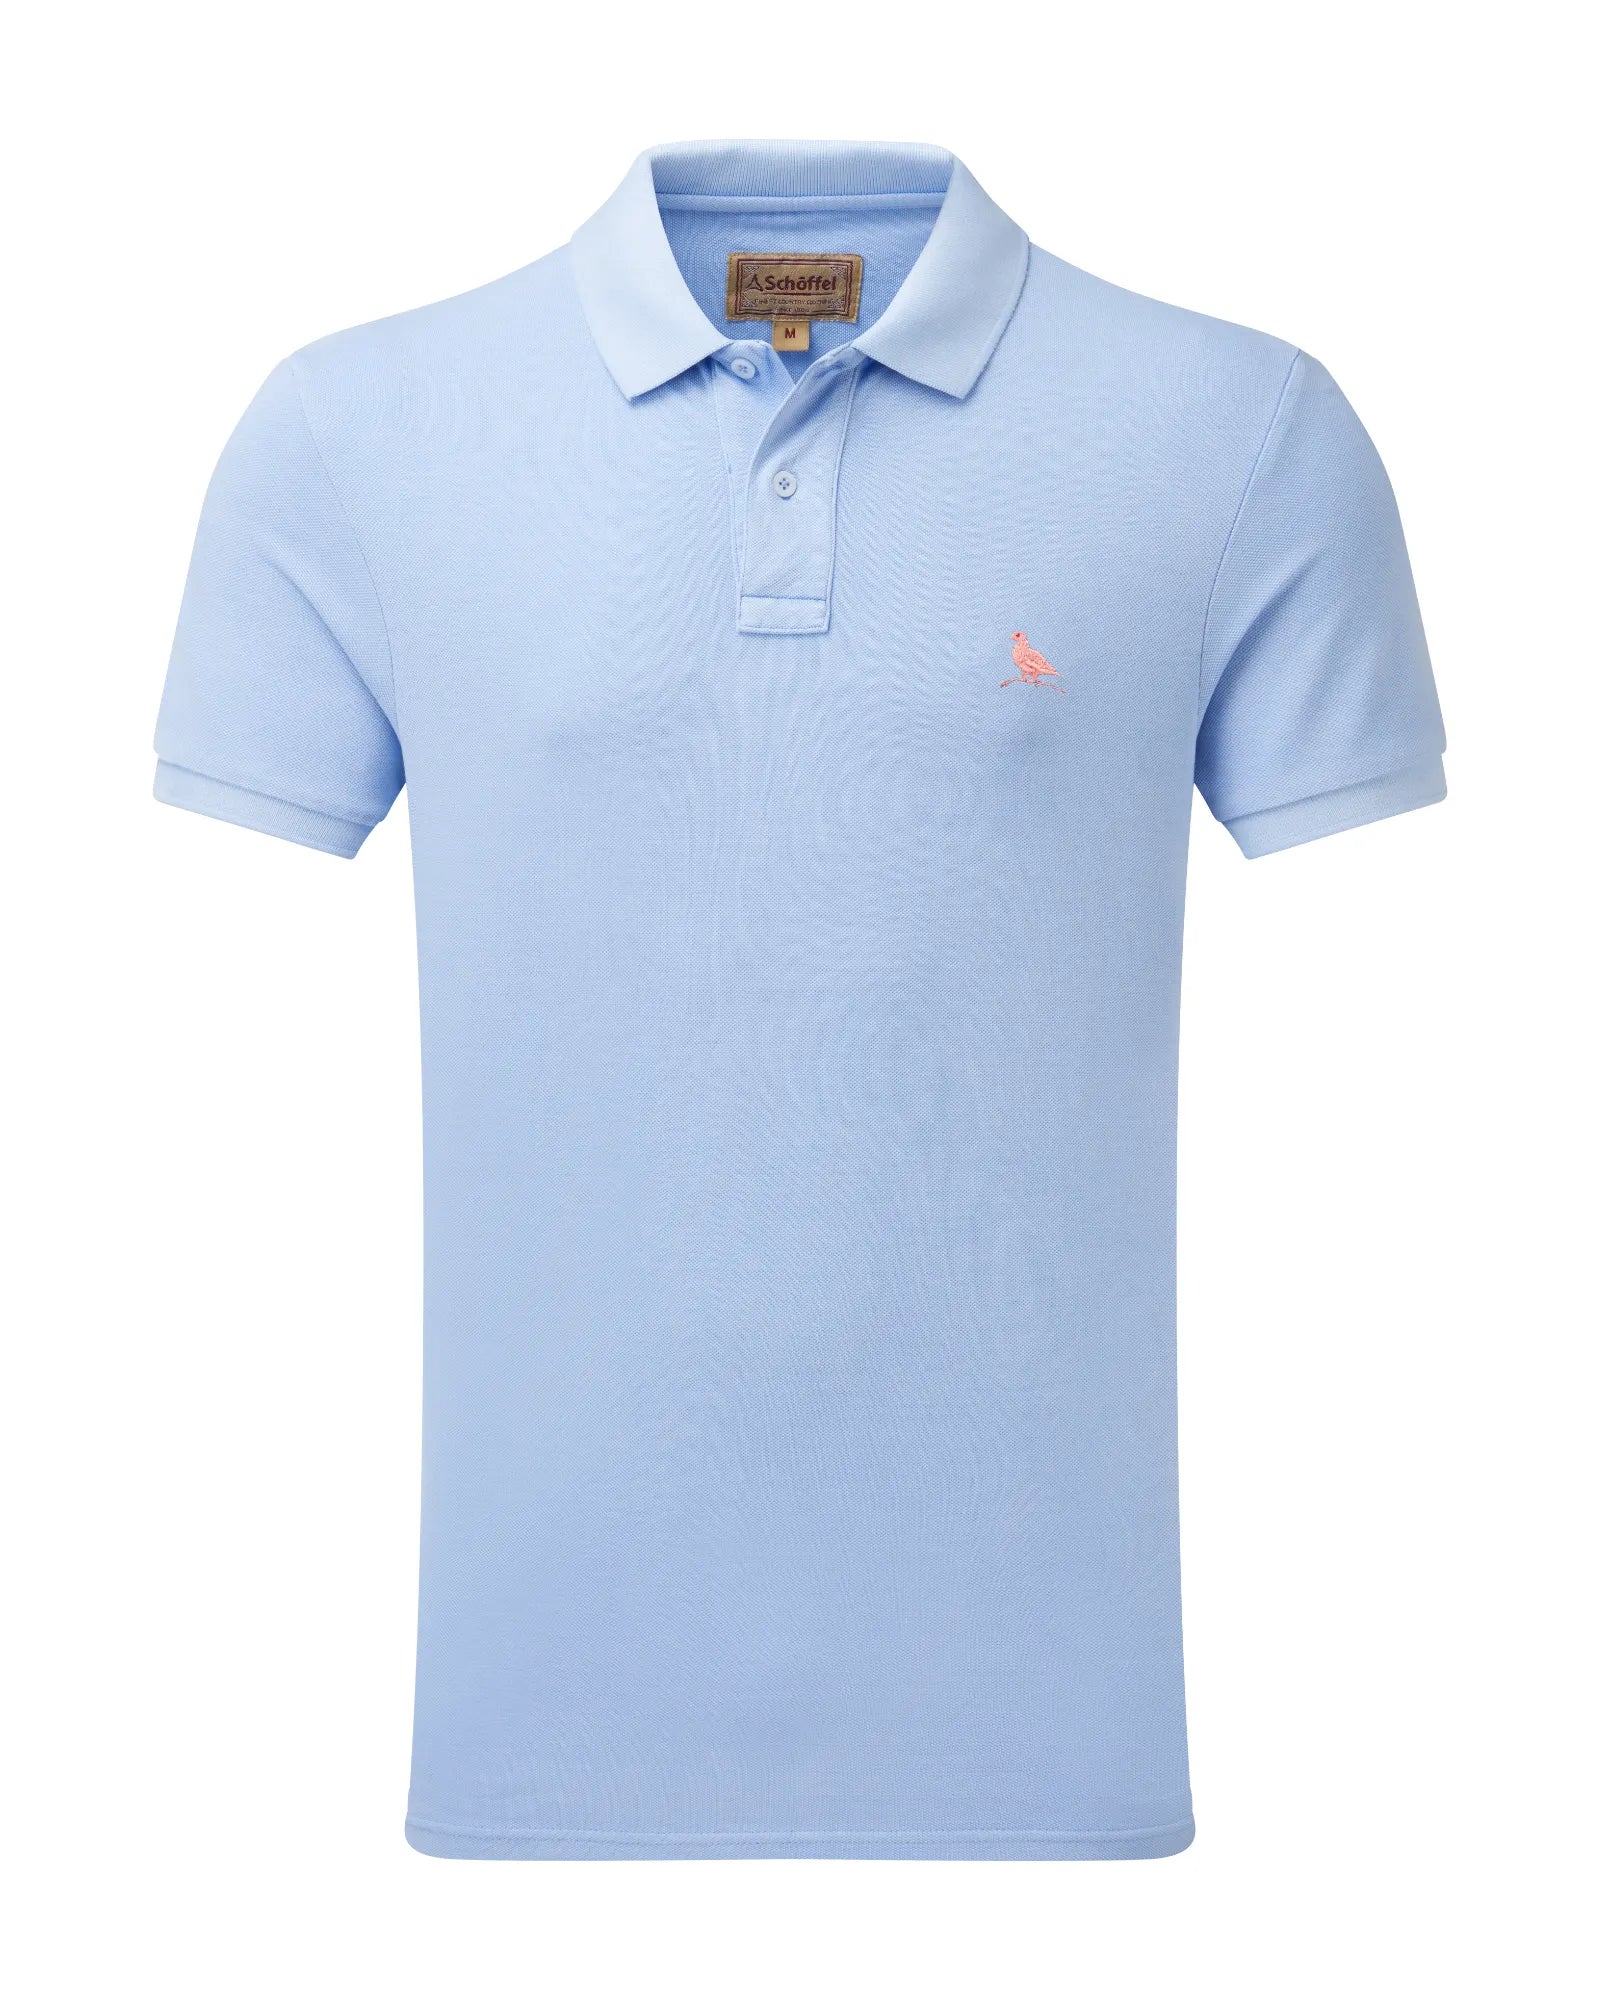 St Ives Pale Blue Pique Polo Shirt